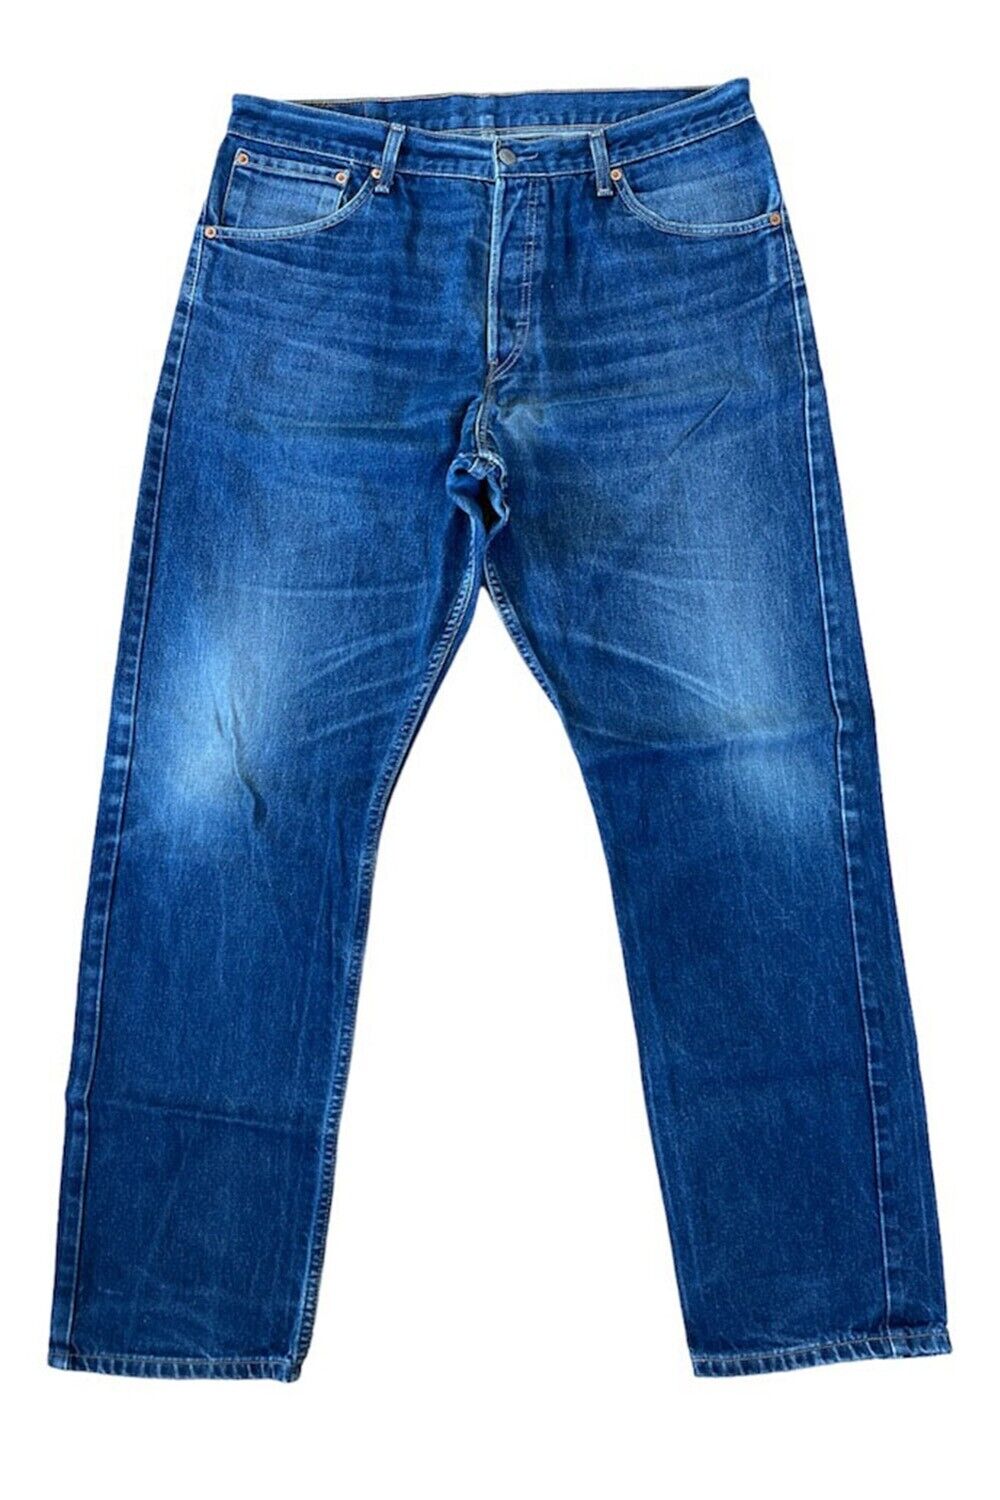 Levis 522 Jeans Straight Leg Vintage Mens Denim Size W36 L33